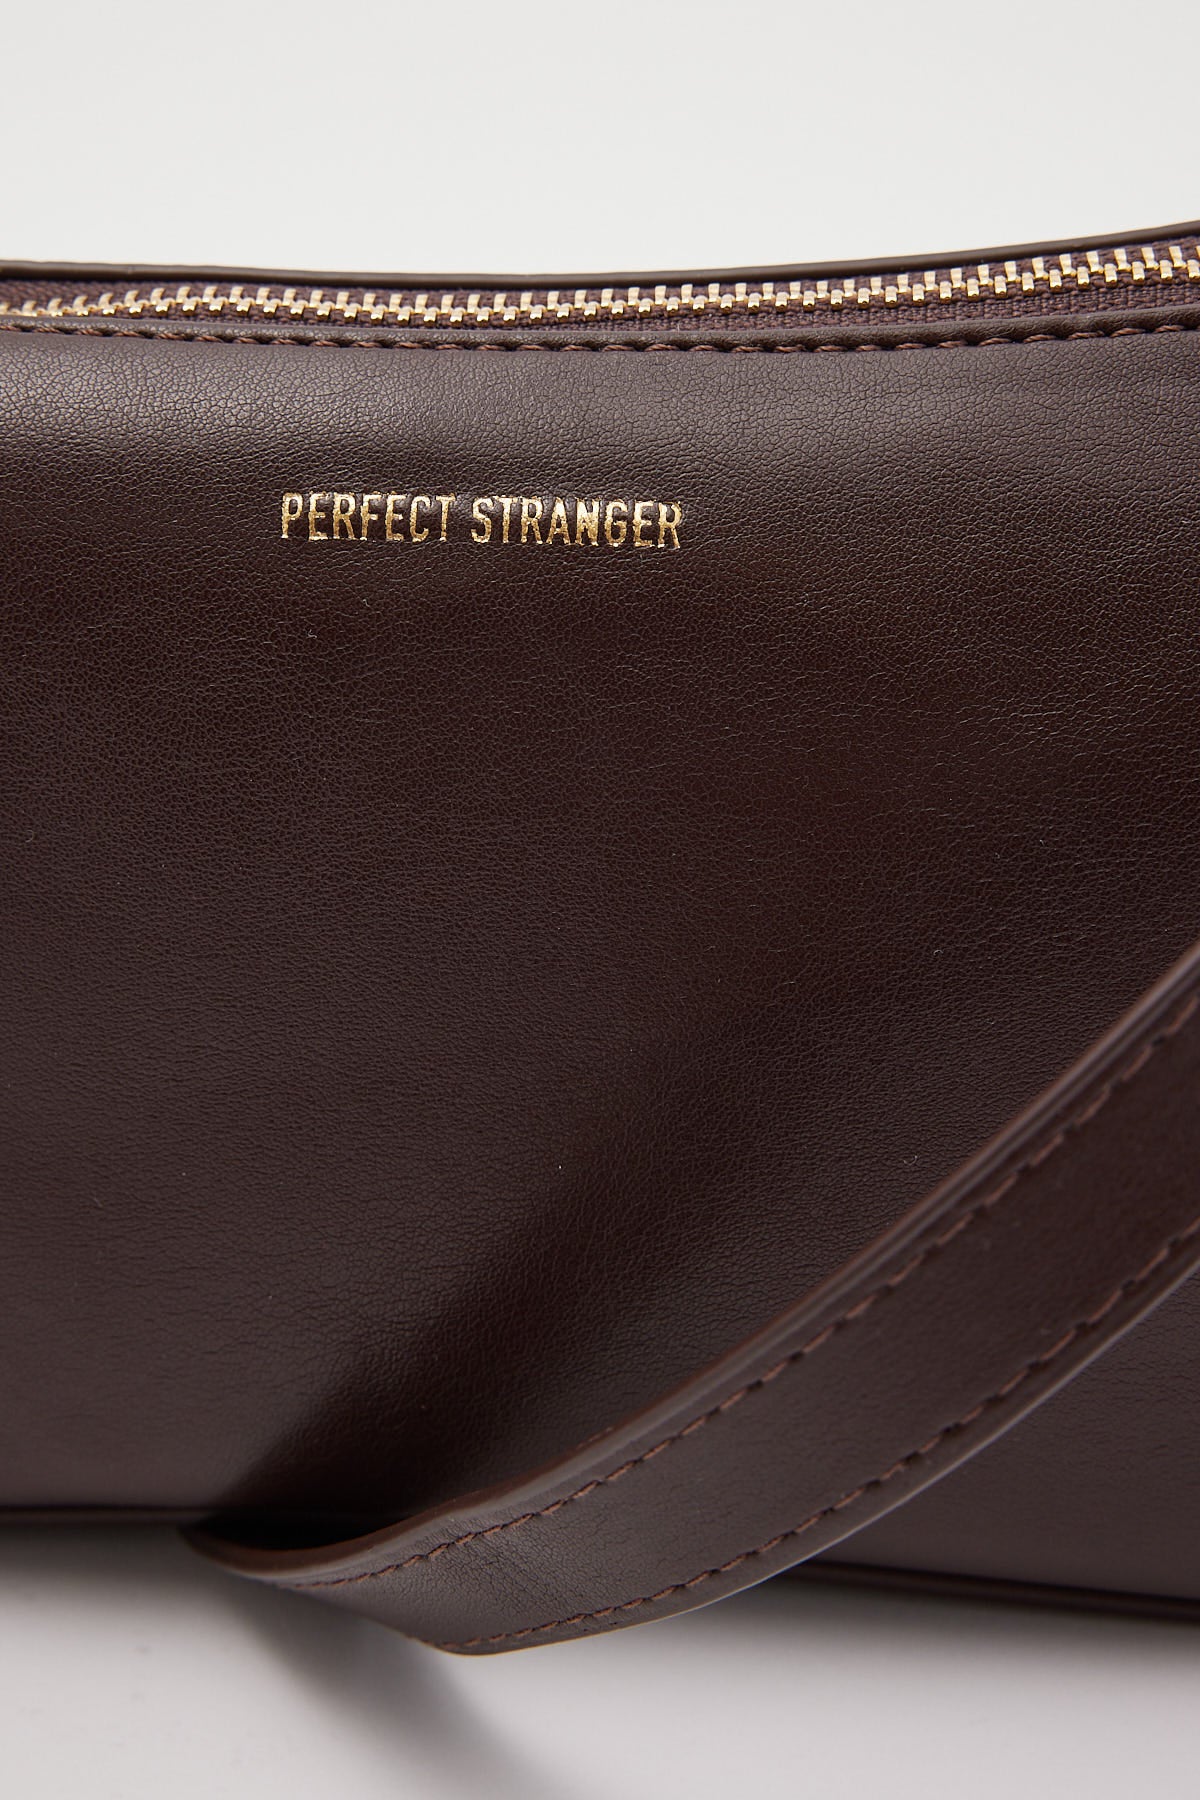 Perfect Stranger Pochette Bag Brown